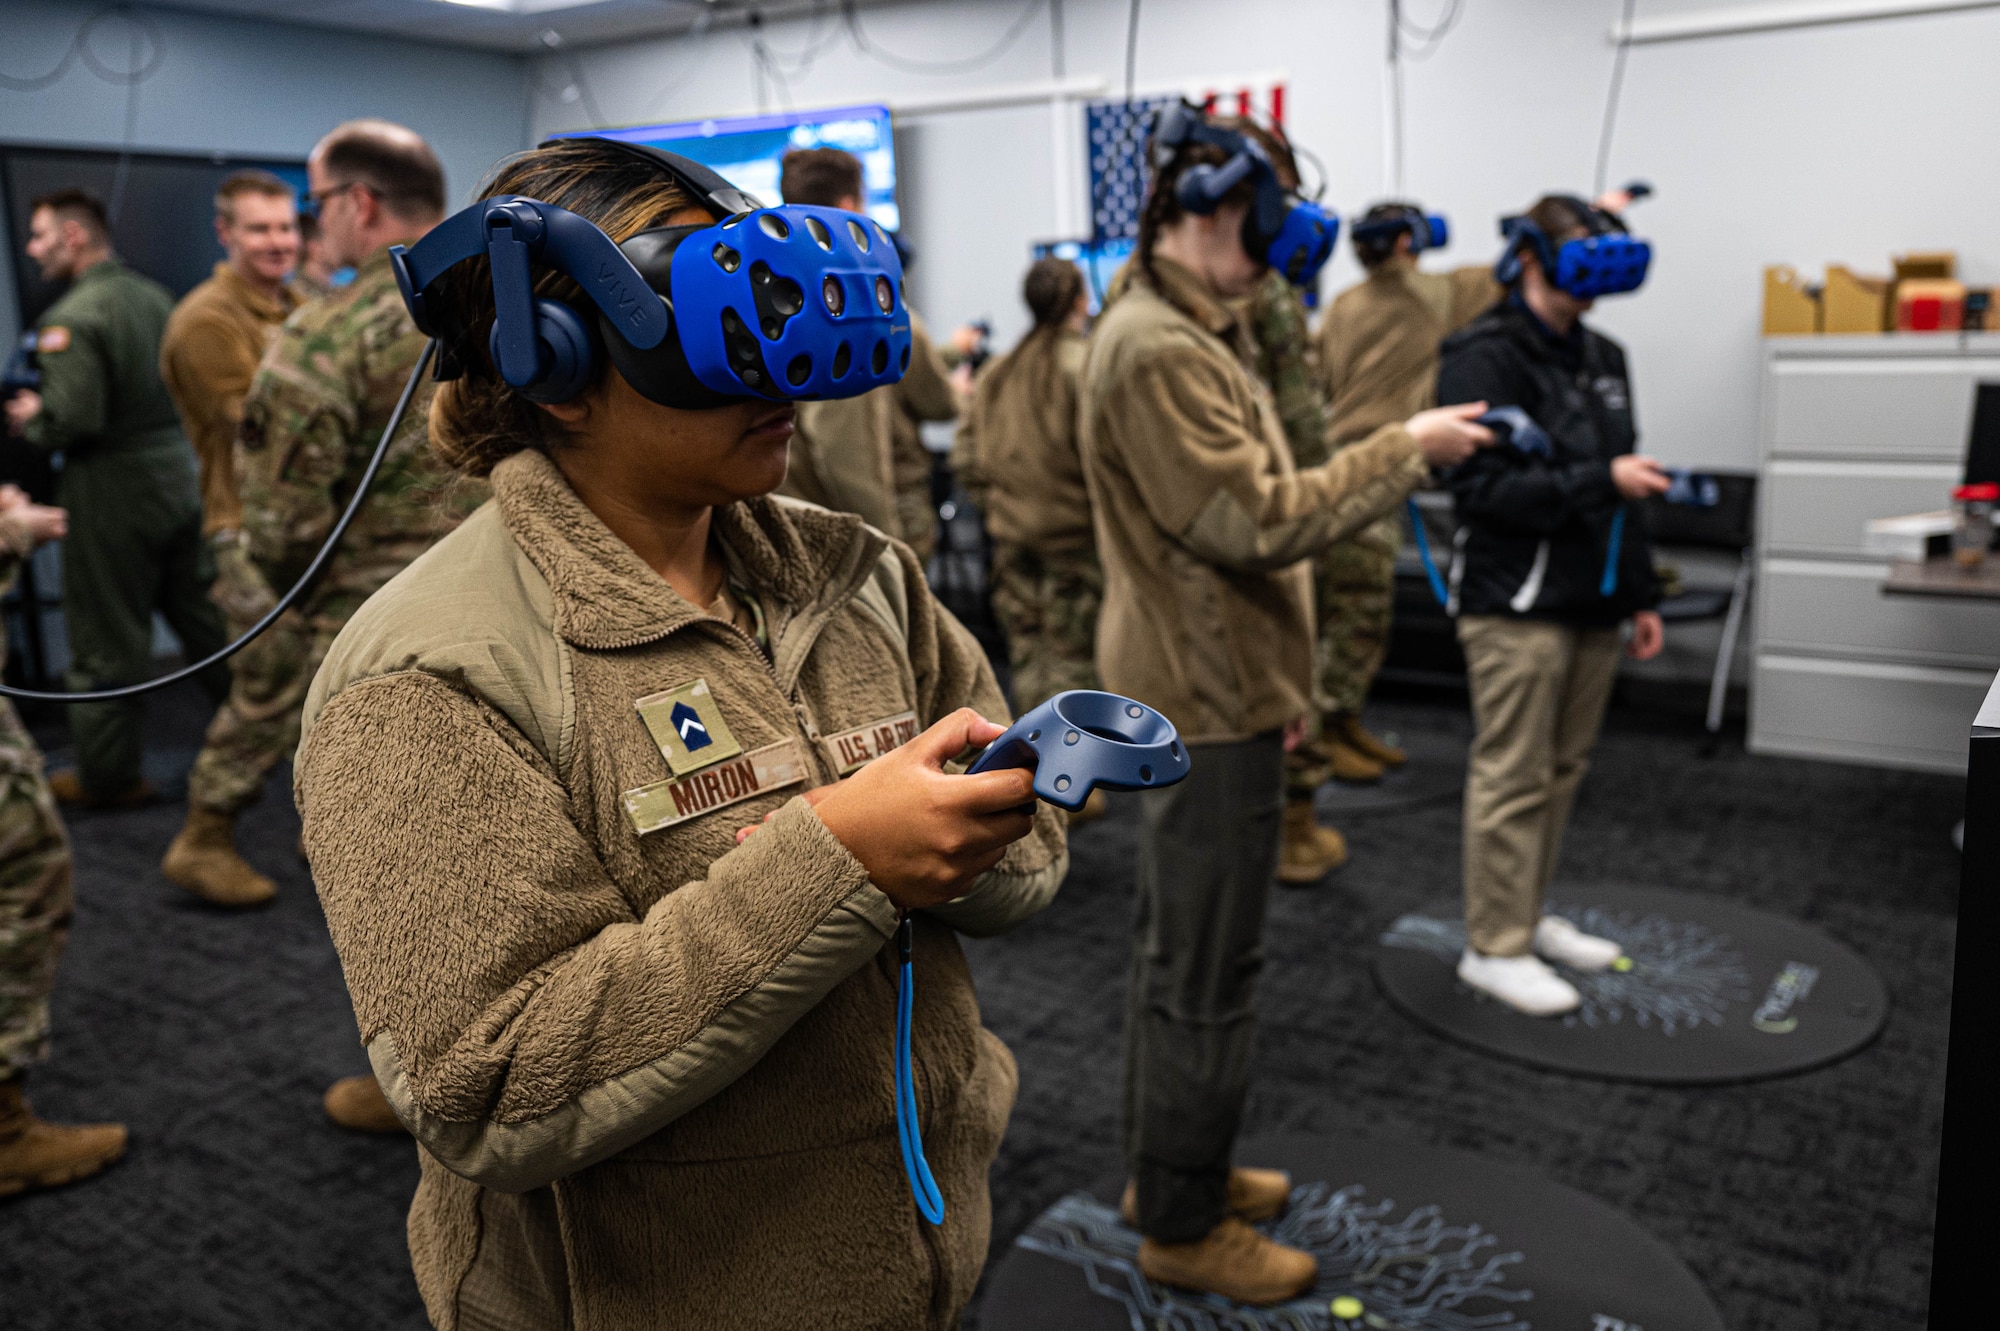 A woman in uniform wears a blue VR headset